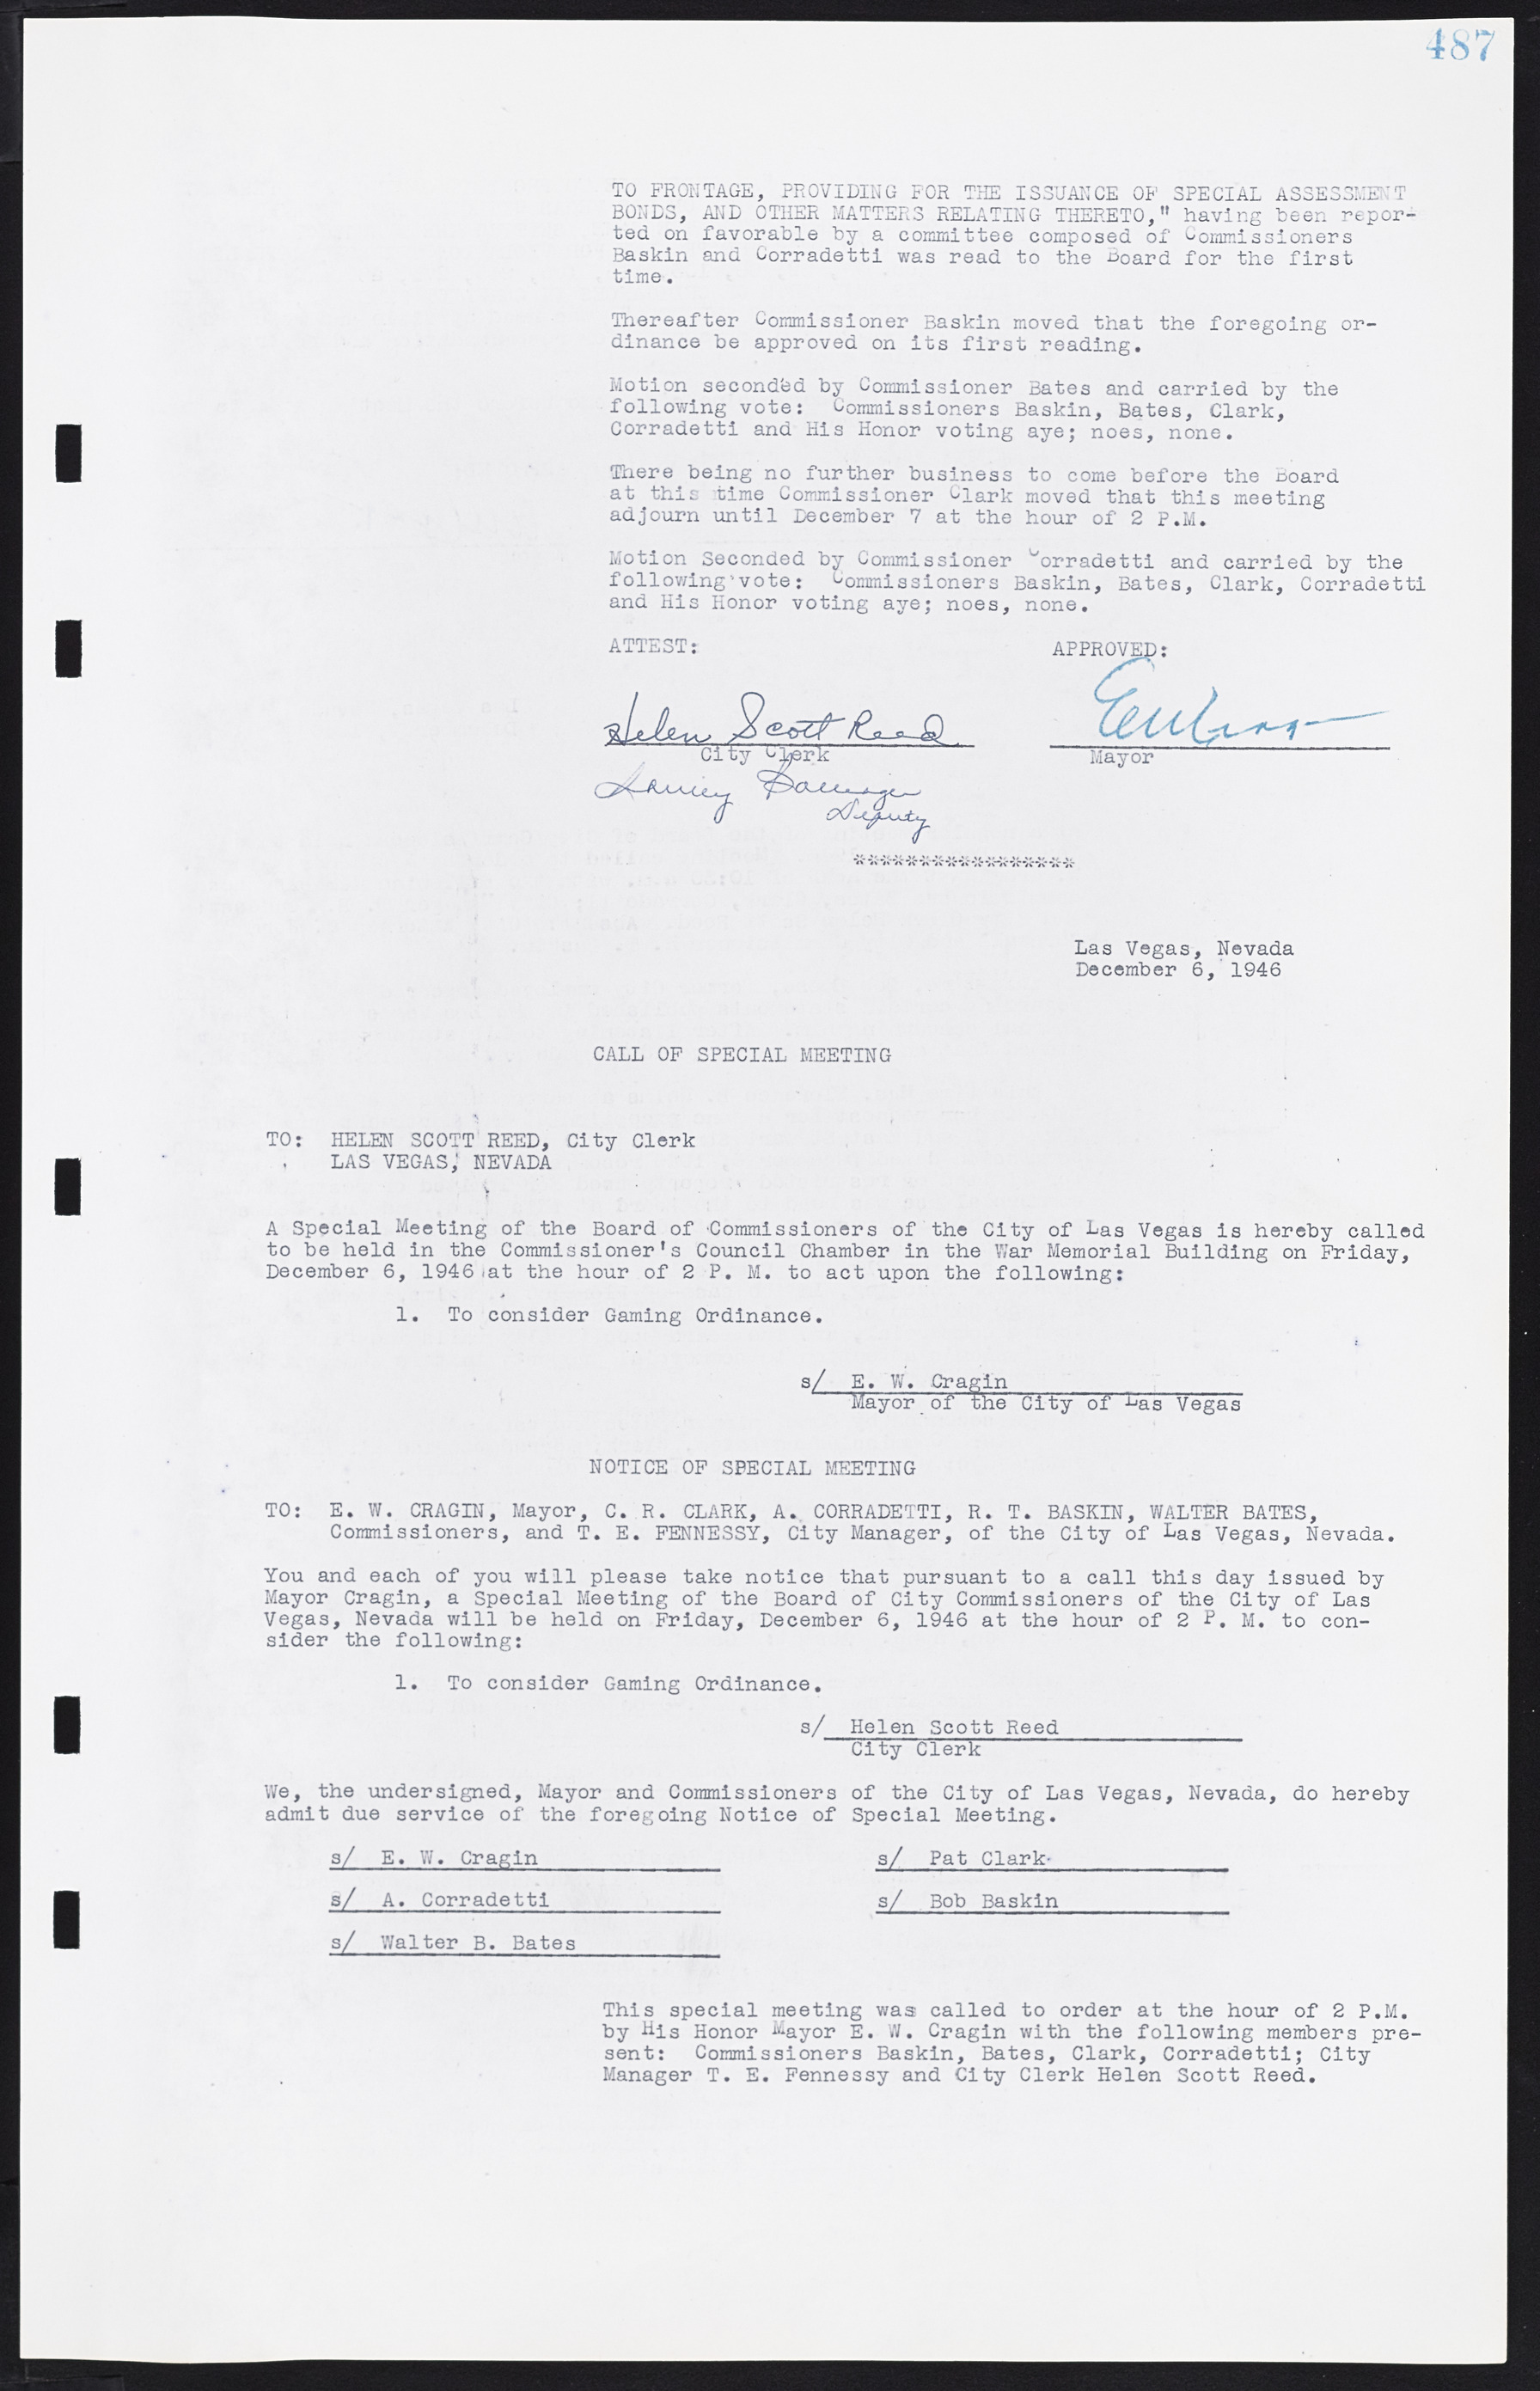 Las Vegas City Commission Minutes, August 11, 1942 to December 30, 1946, lvc000005-518